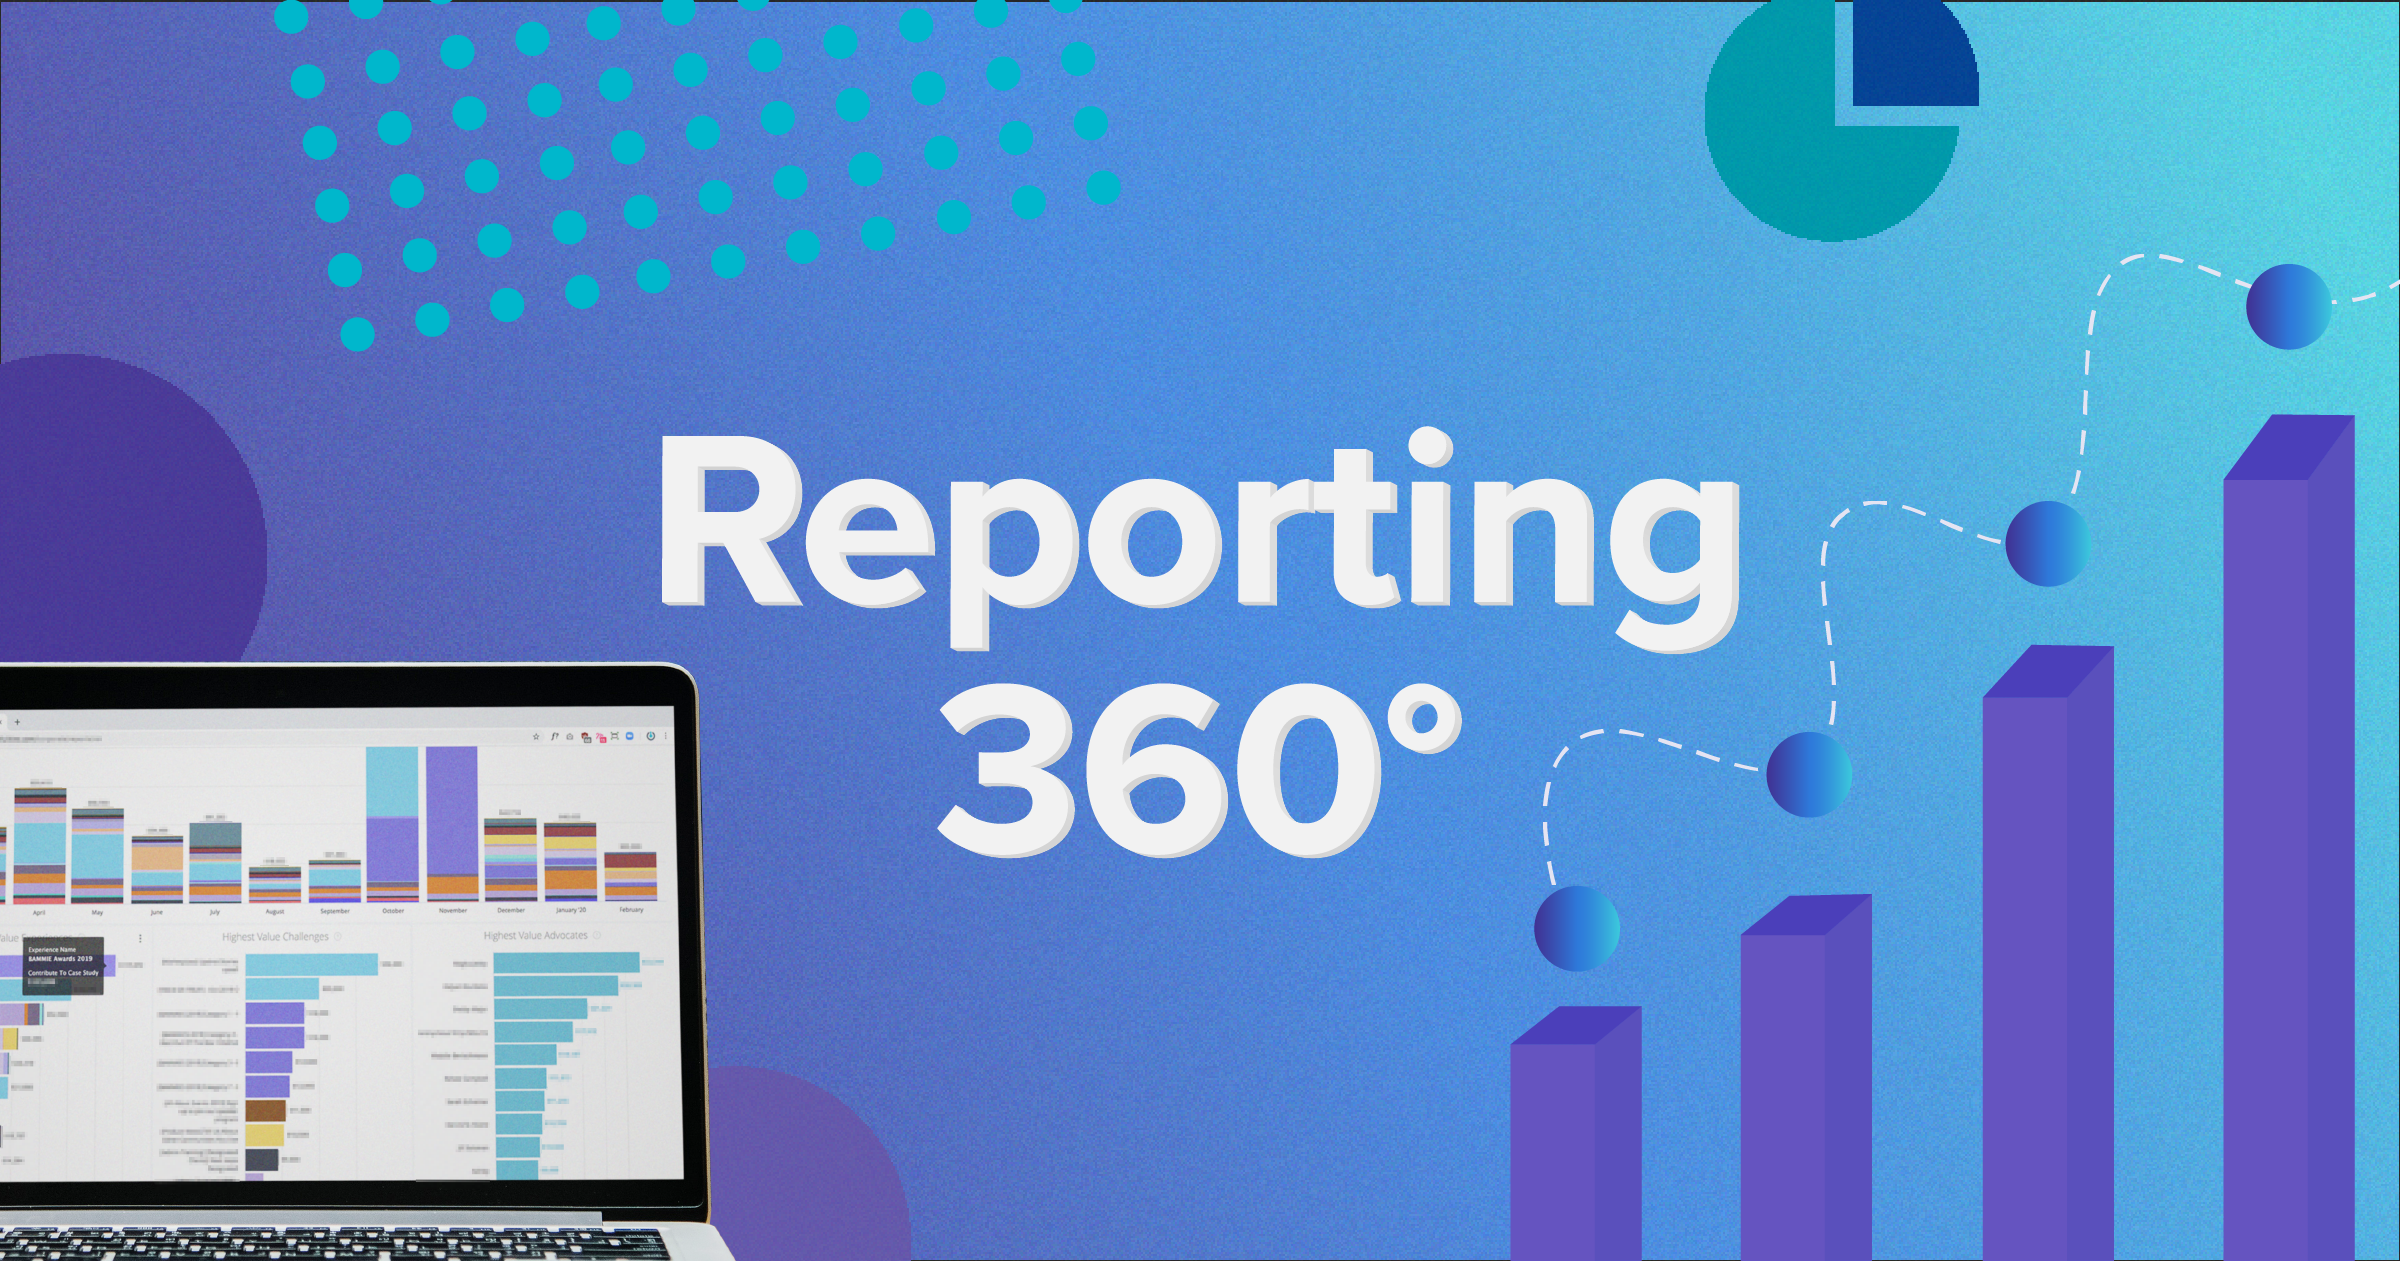 Reporting 360 - Blog Meta Image